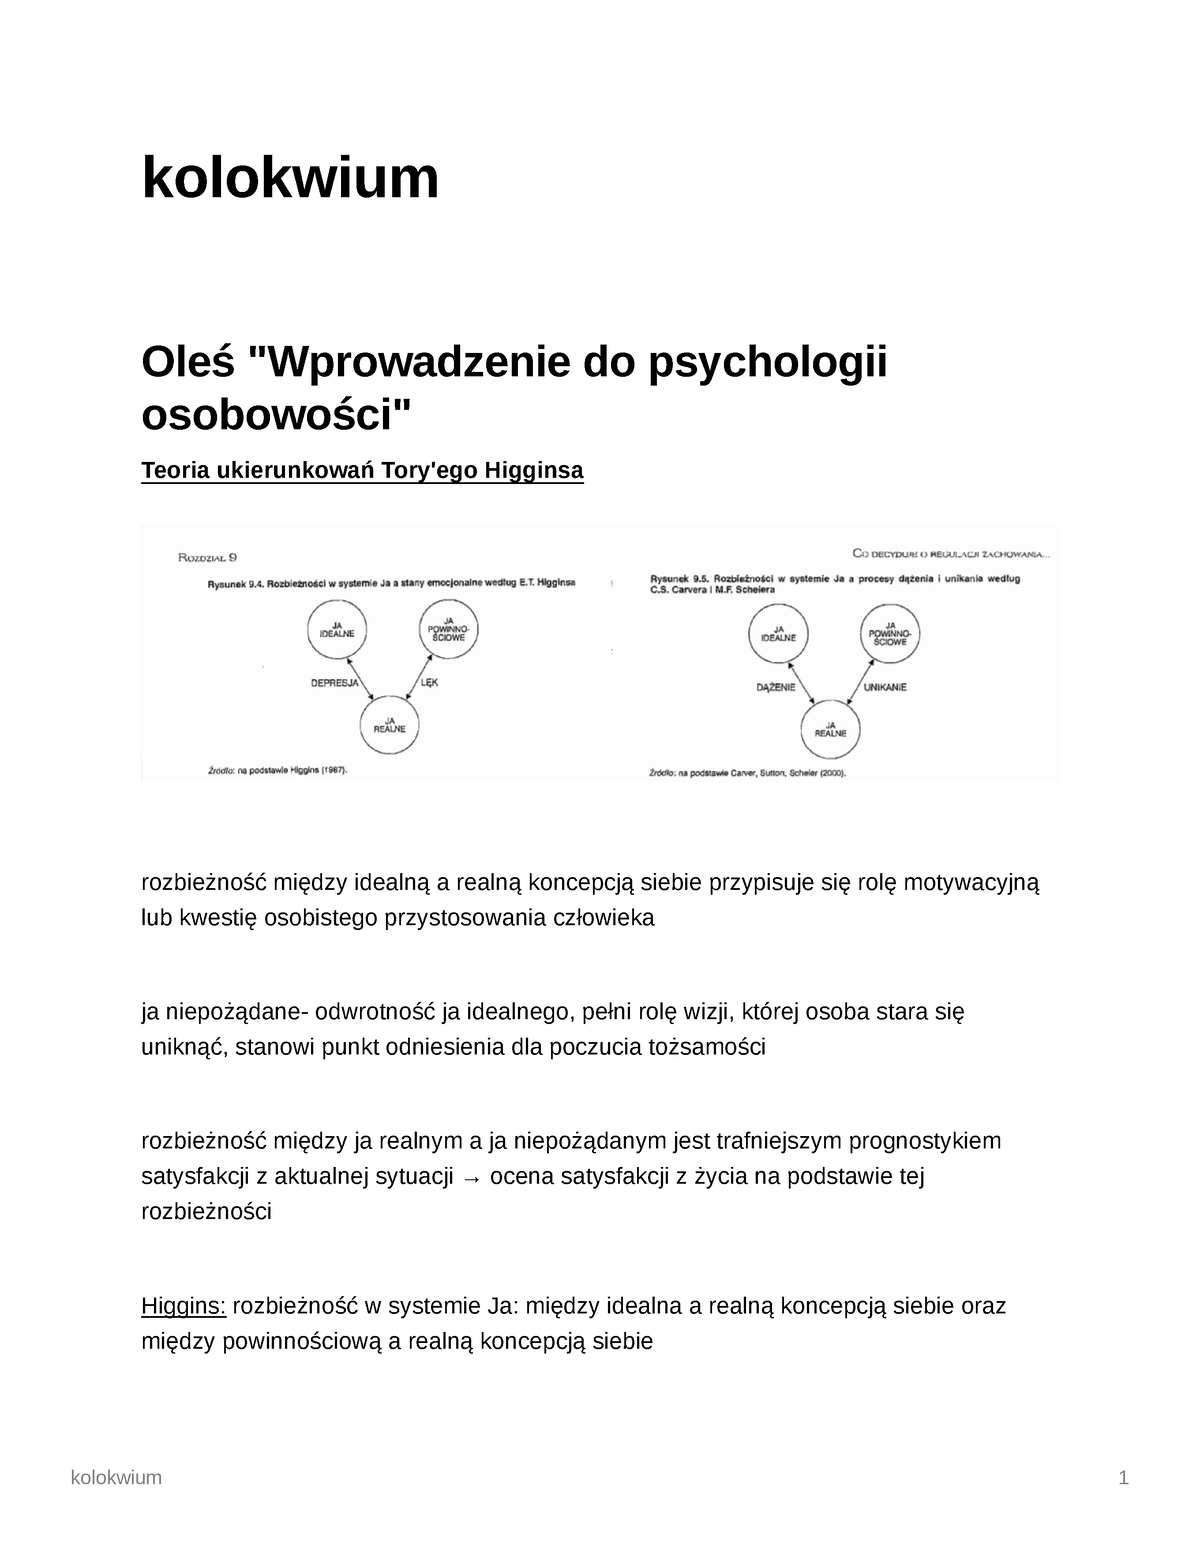 psychologia-ja-i-tozsamosc-notatki-kolokwium-ole-wprowadzenie-do